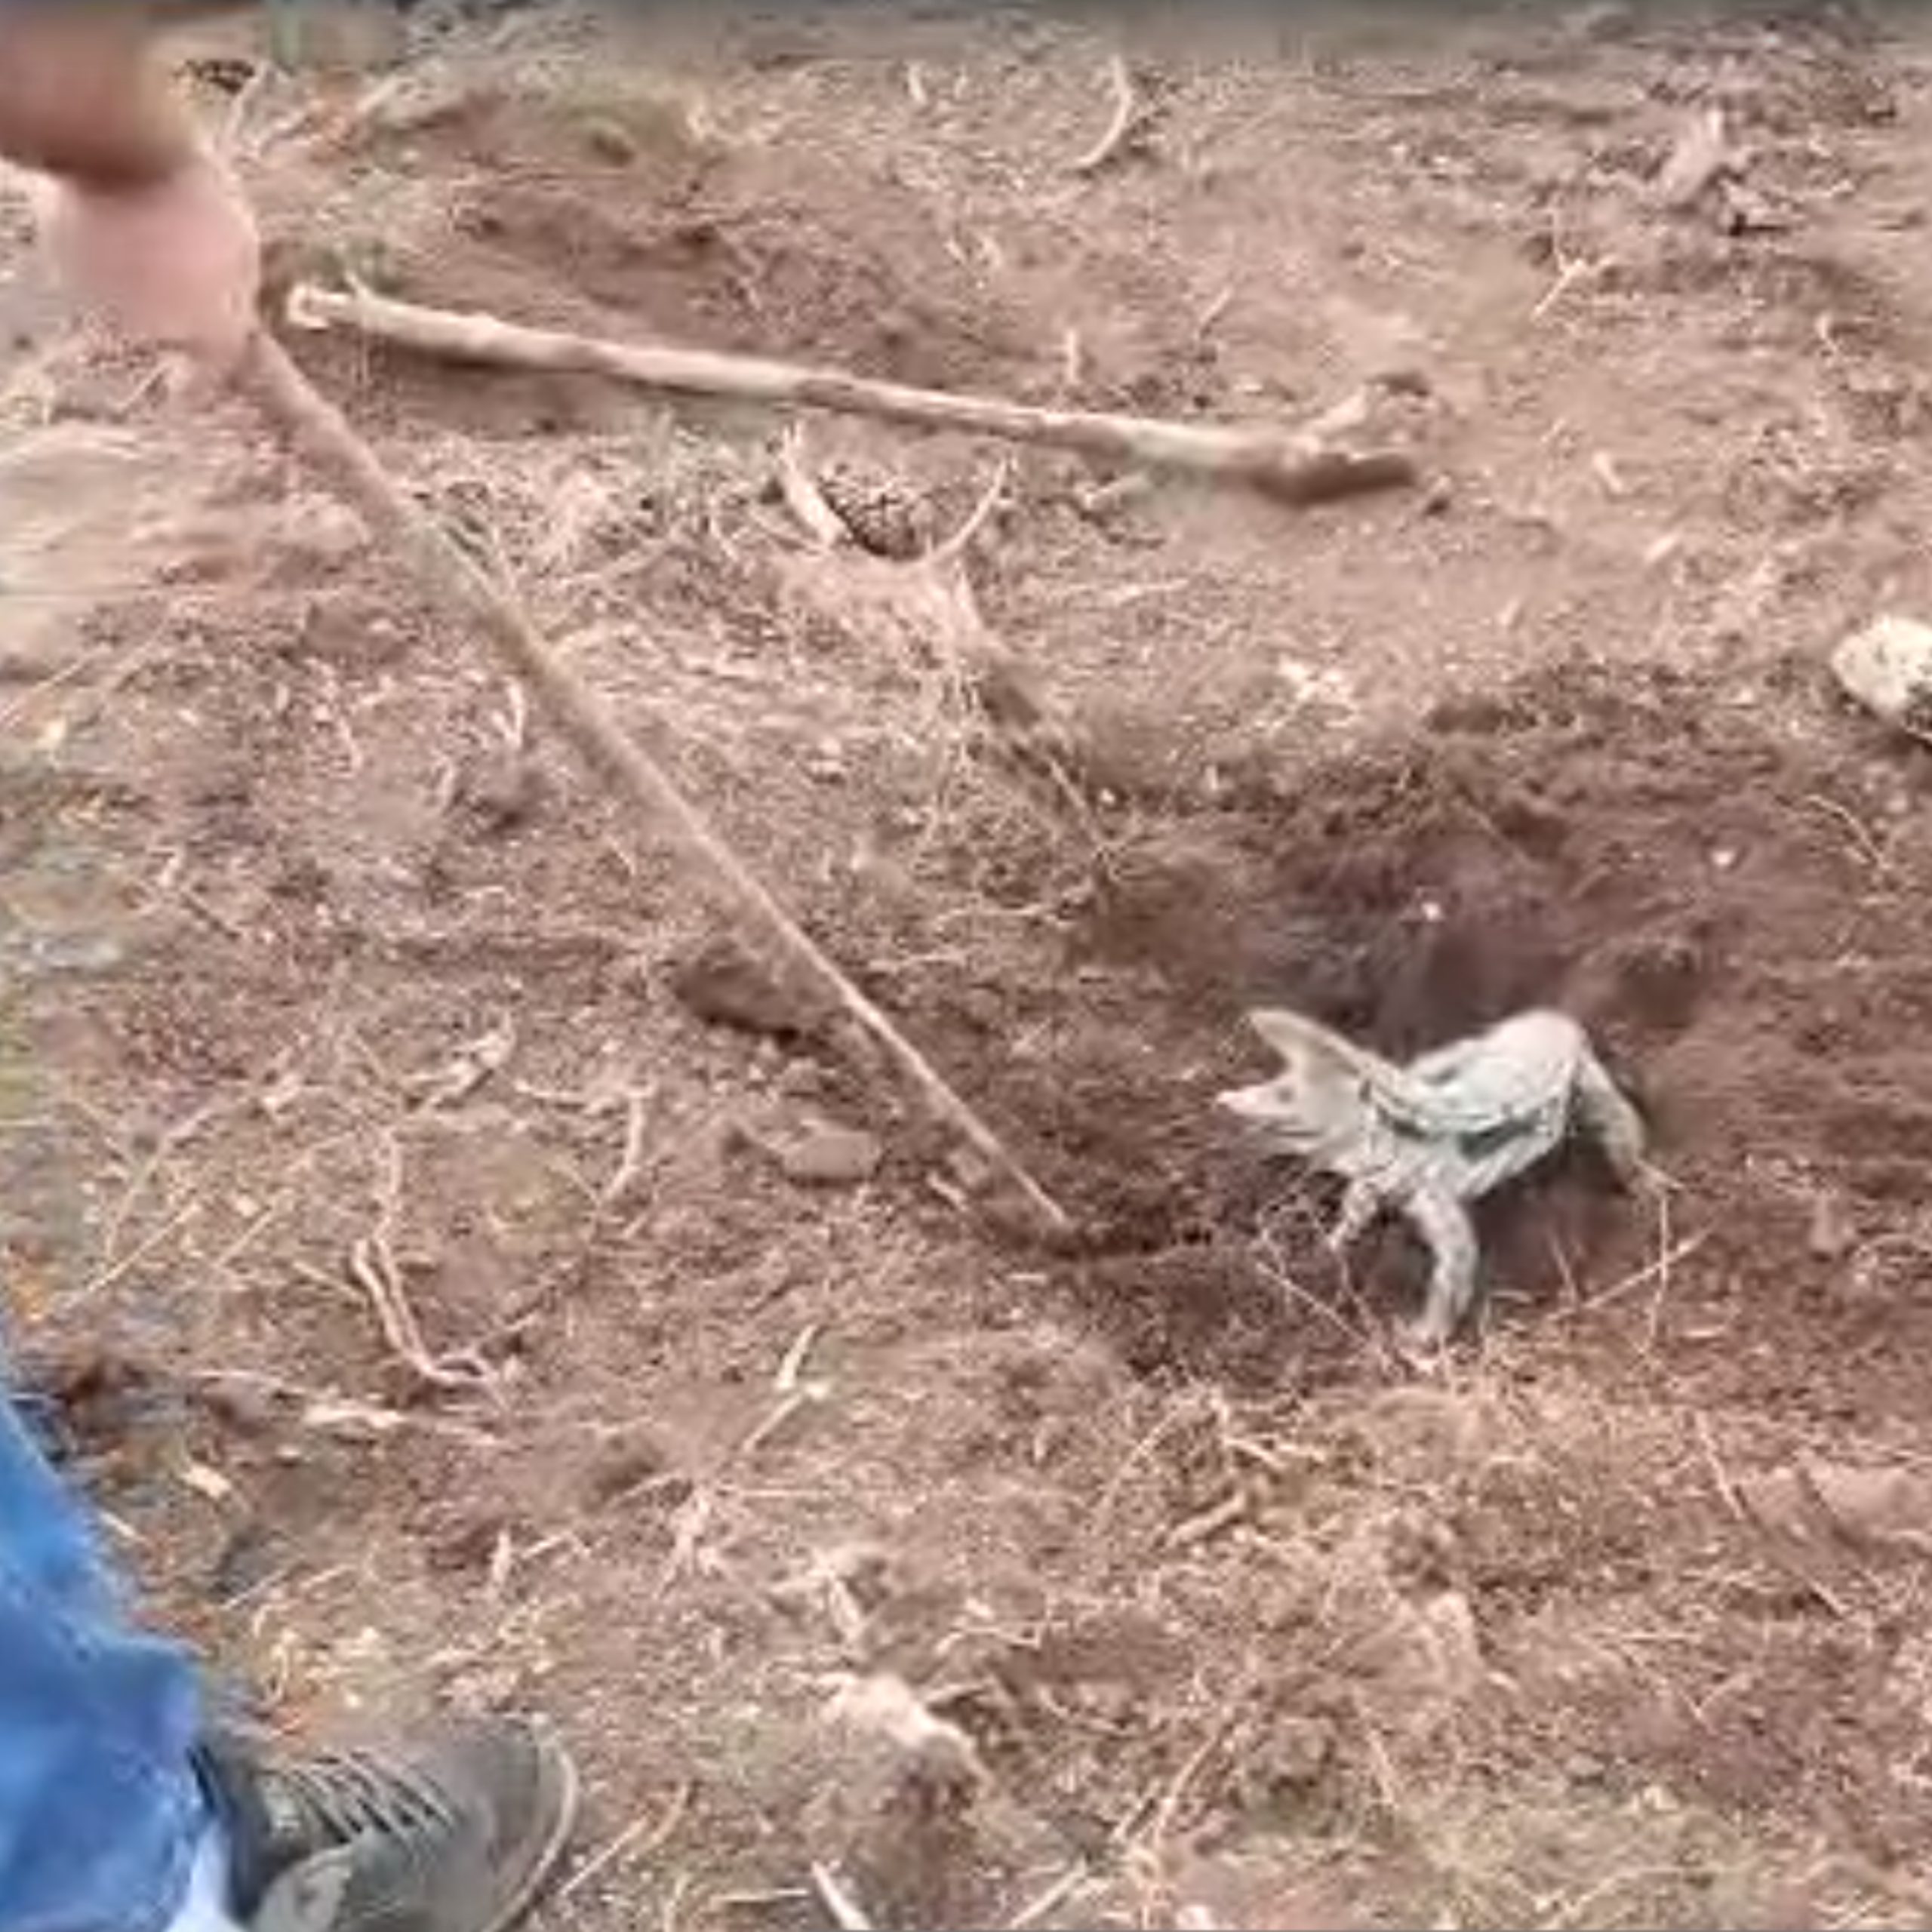  família resgata lagarto que ficou com rabo soterrado em obra de hidrelétrica - clevelândia 